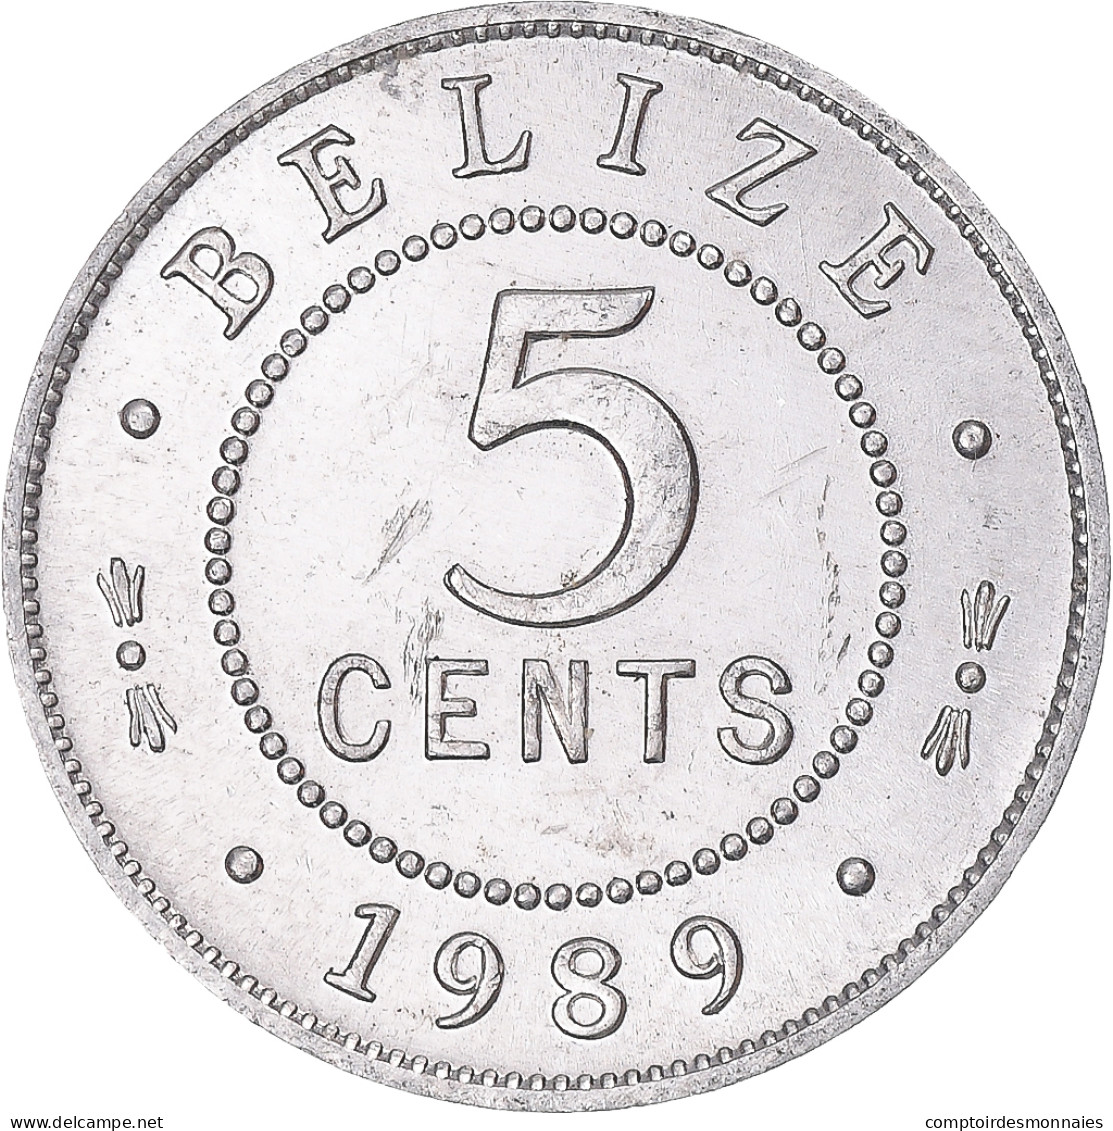 Monnaie, Belize, 5 Cents, 1989 - Belize